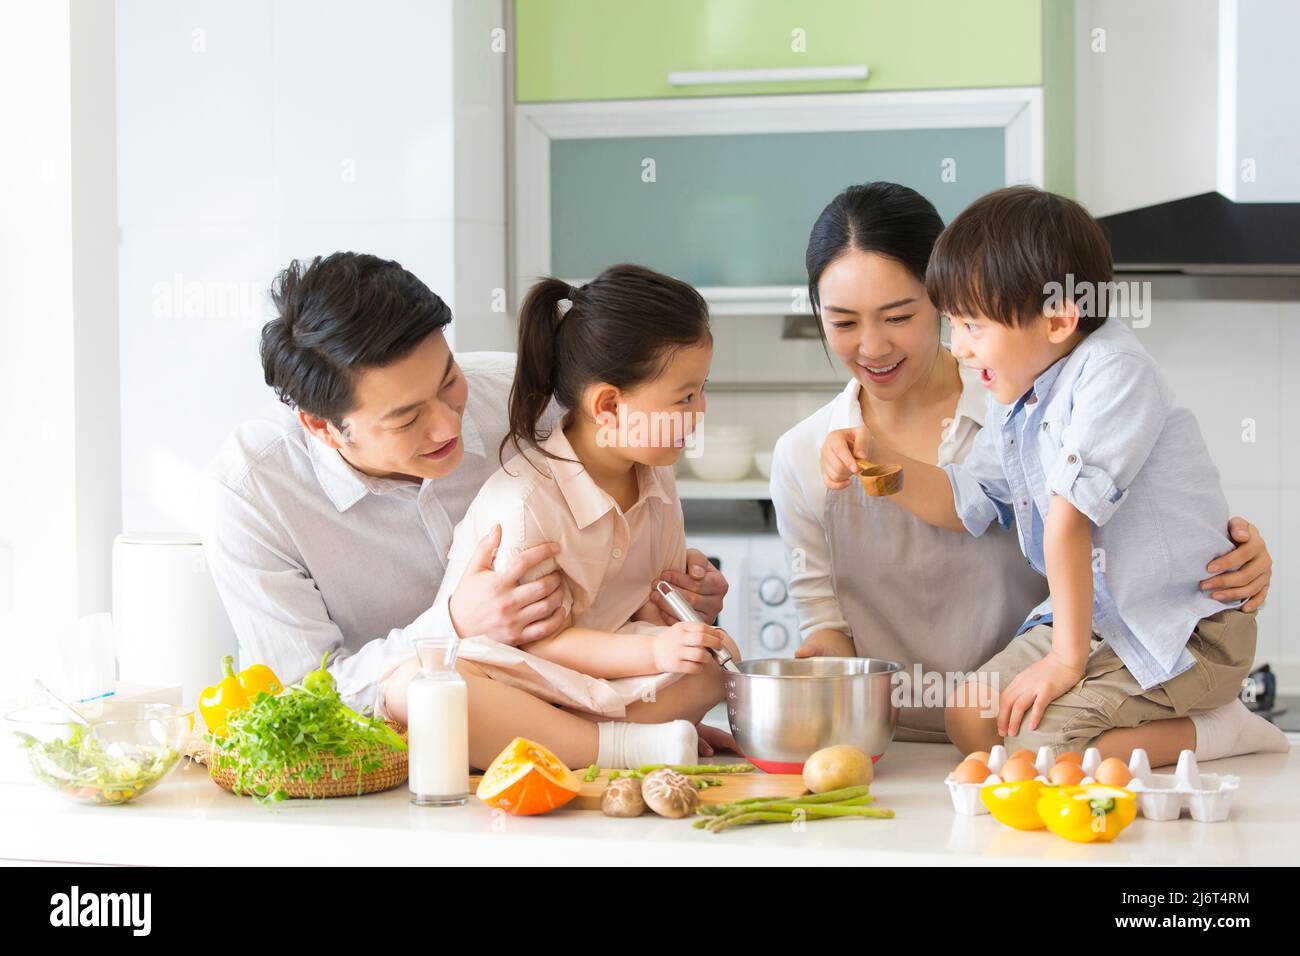 Famiglia cucina parentage. I giovani genitori insegnano a due preschoolers come cucinare. - foto di scorta Foto Stock